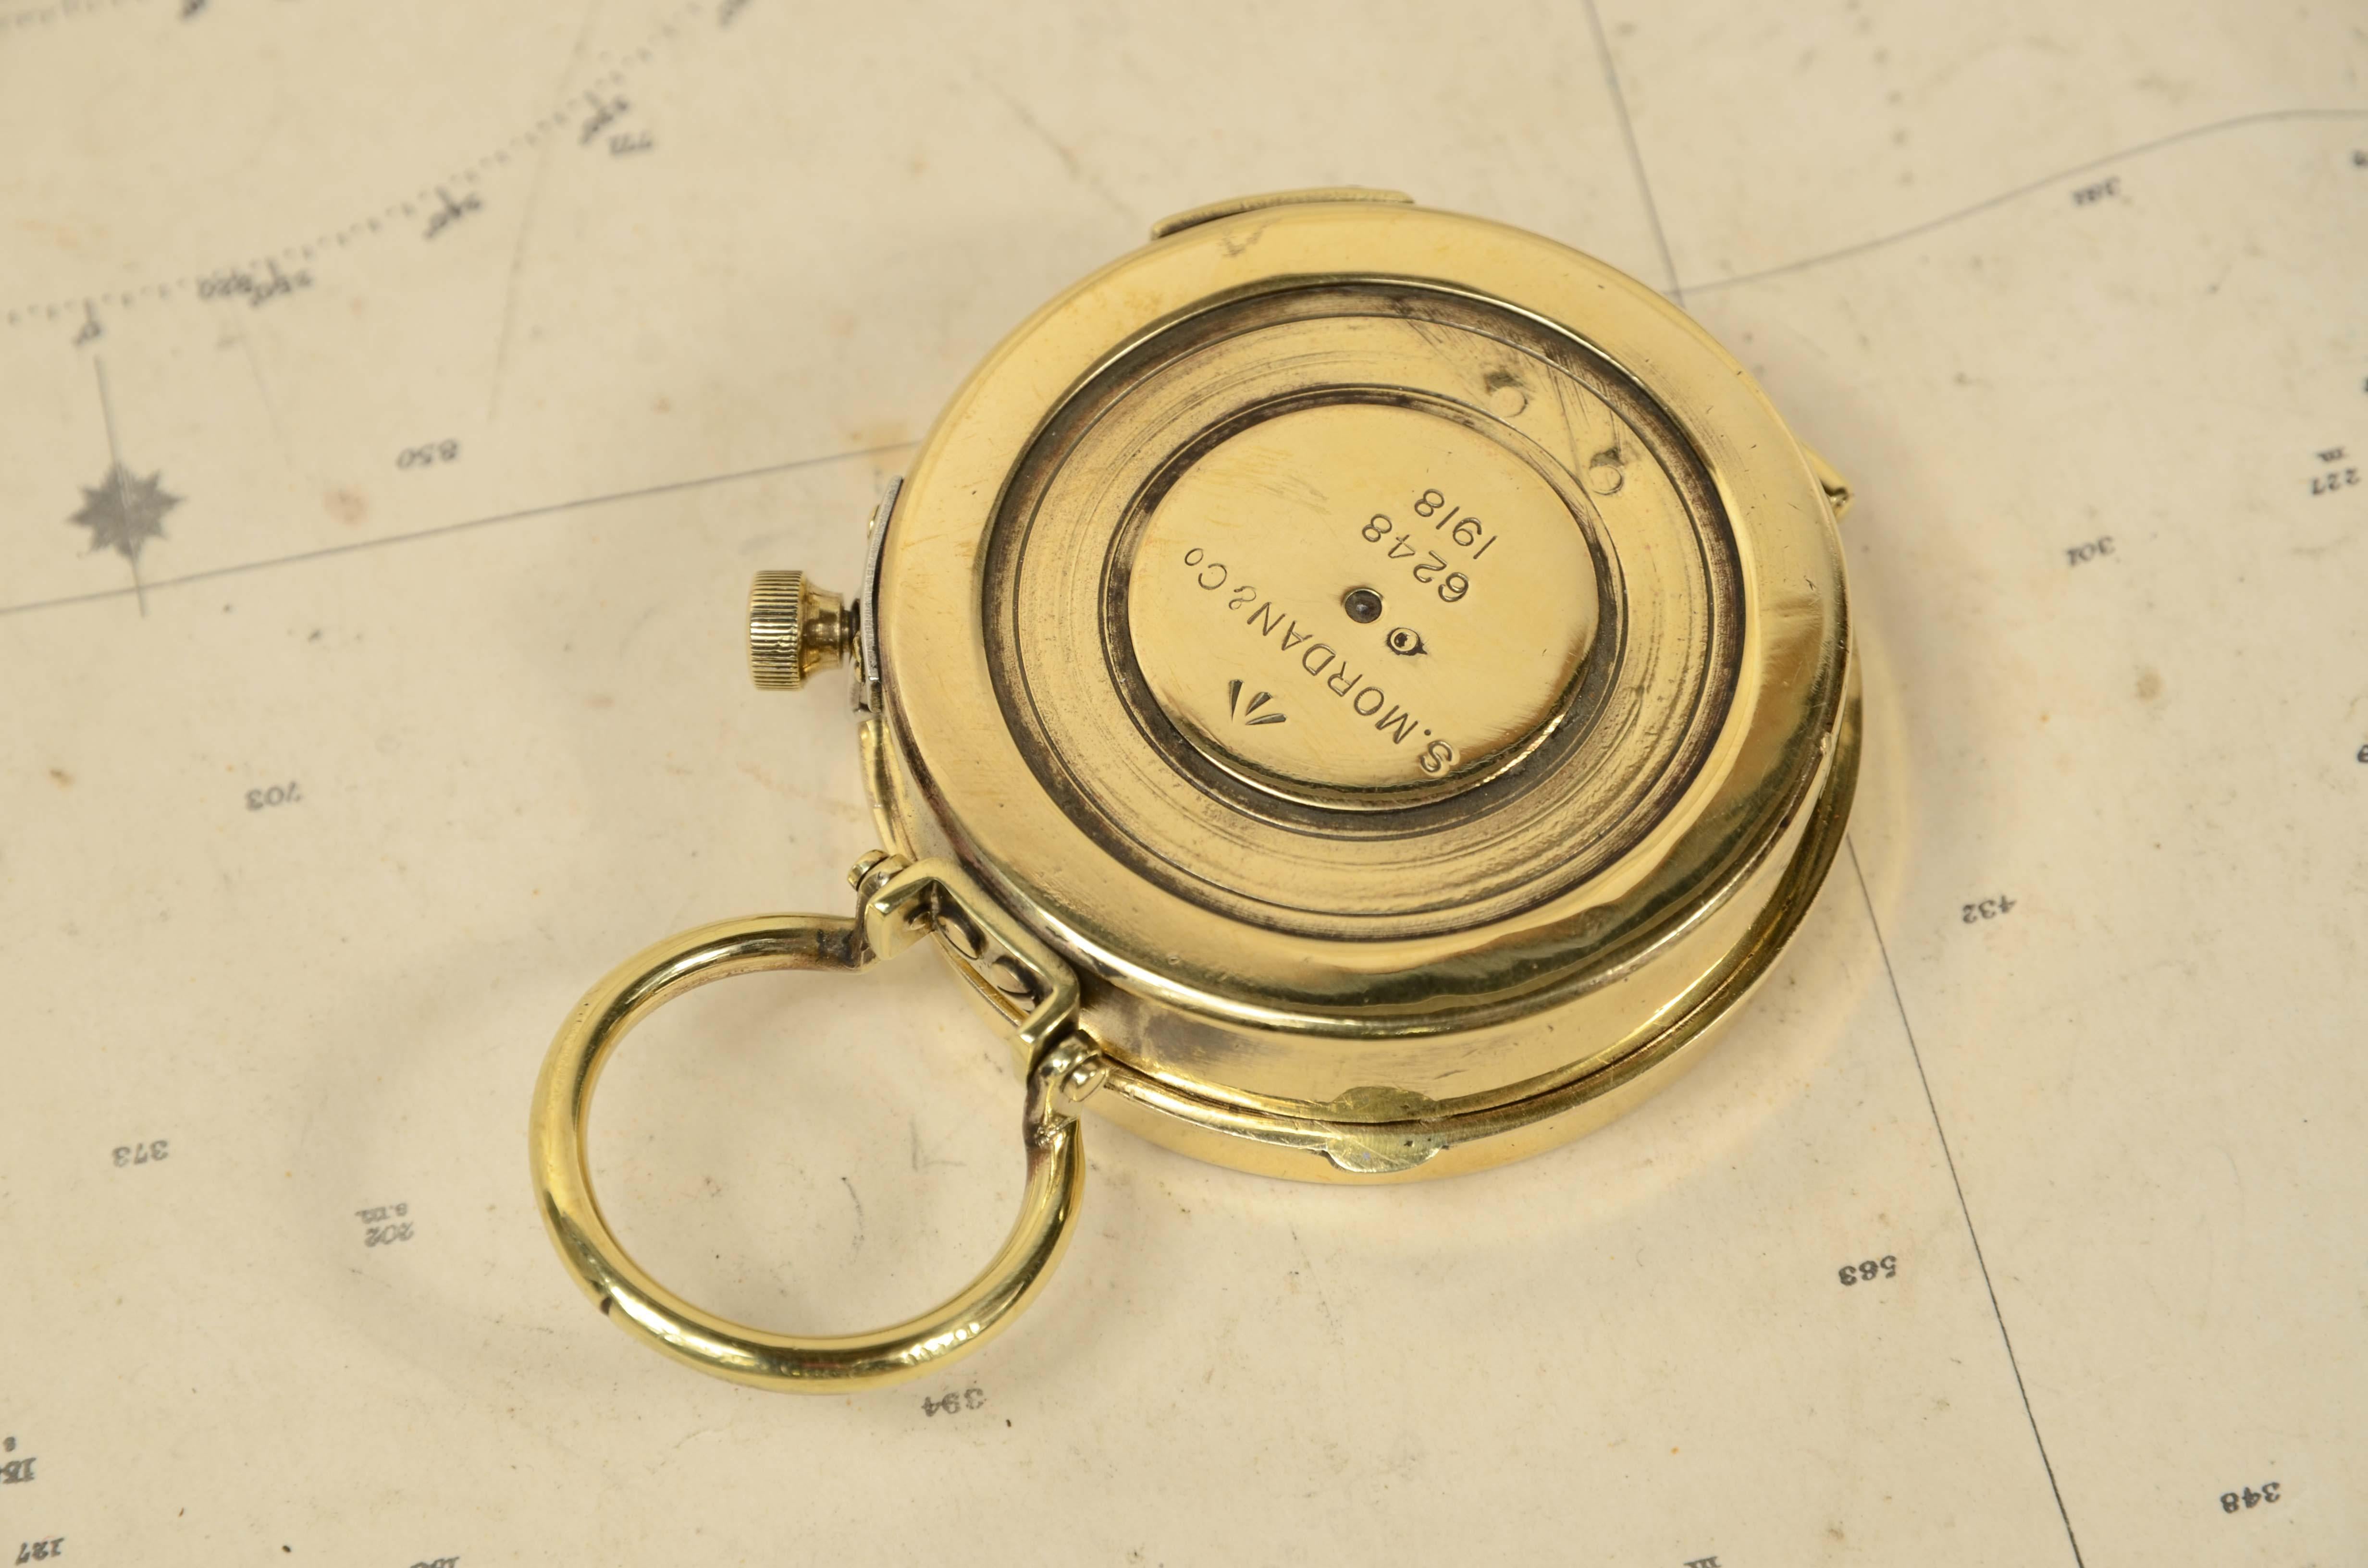 Bussola nautica da tasca in ottone del 1918  firmata S. Mordan & Co n. 6248. 5